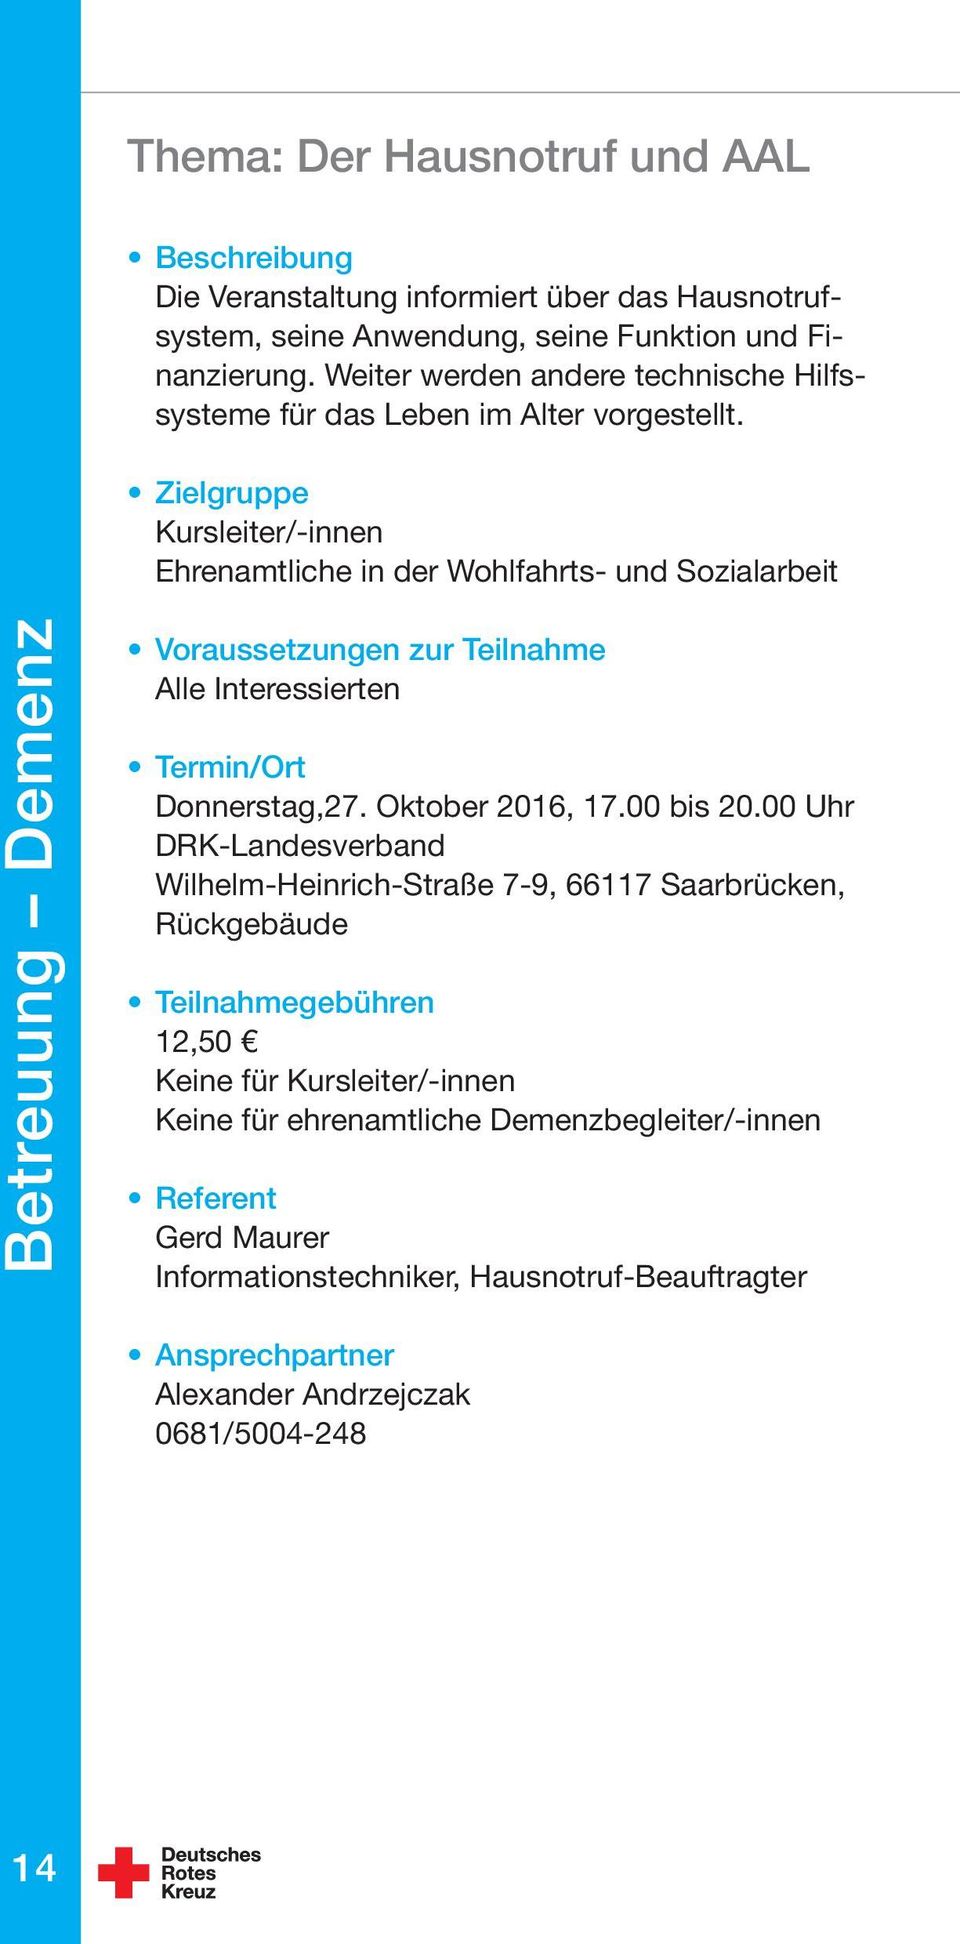 Kursleiter/-innen Ehrenamtliche in der Wohlfahrts- und Sozialarbeit Betreuung Demenz Alle Interessierten Donnerstag,27. Oktober 2016, 17.00 bis 20.